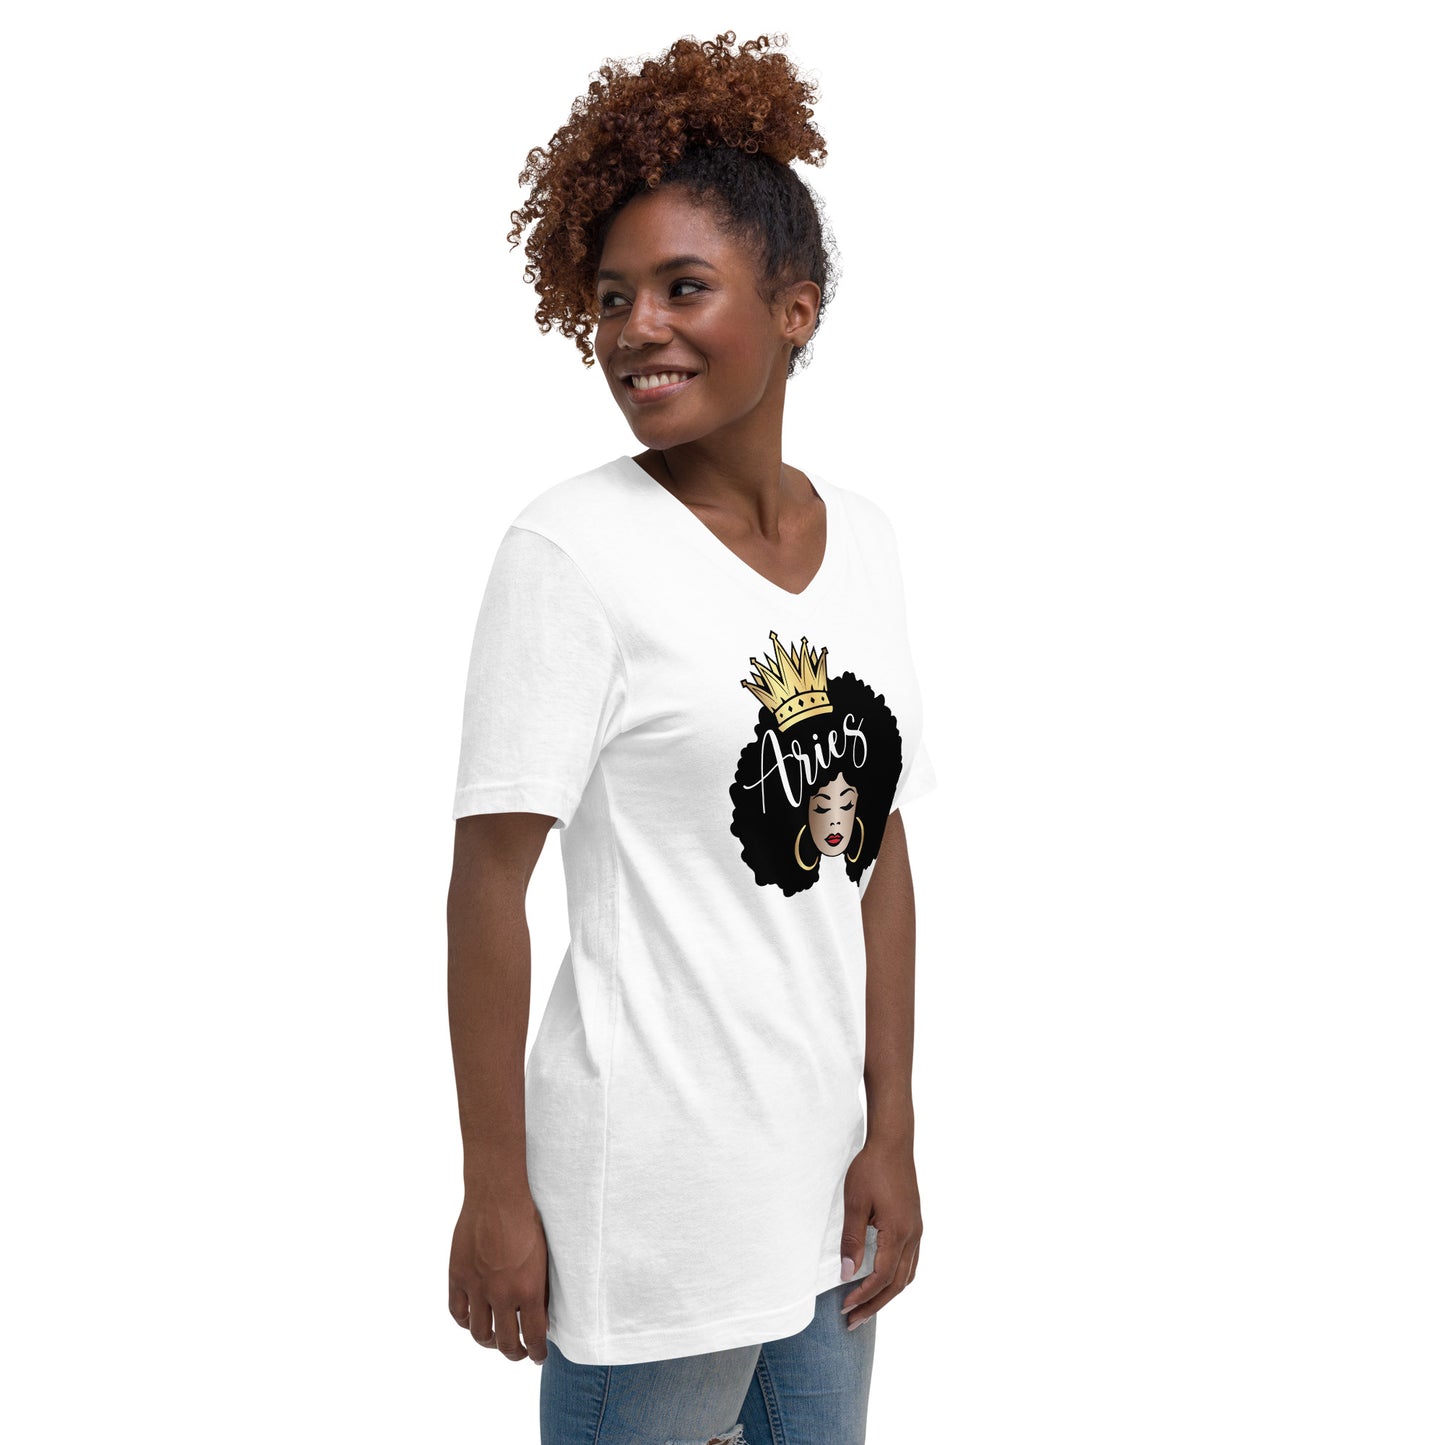 Women's Short Sleeve V-Neck T-Shirt - Aries Afro Queen